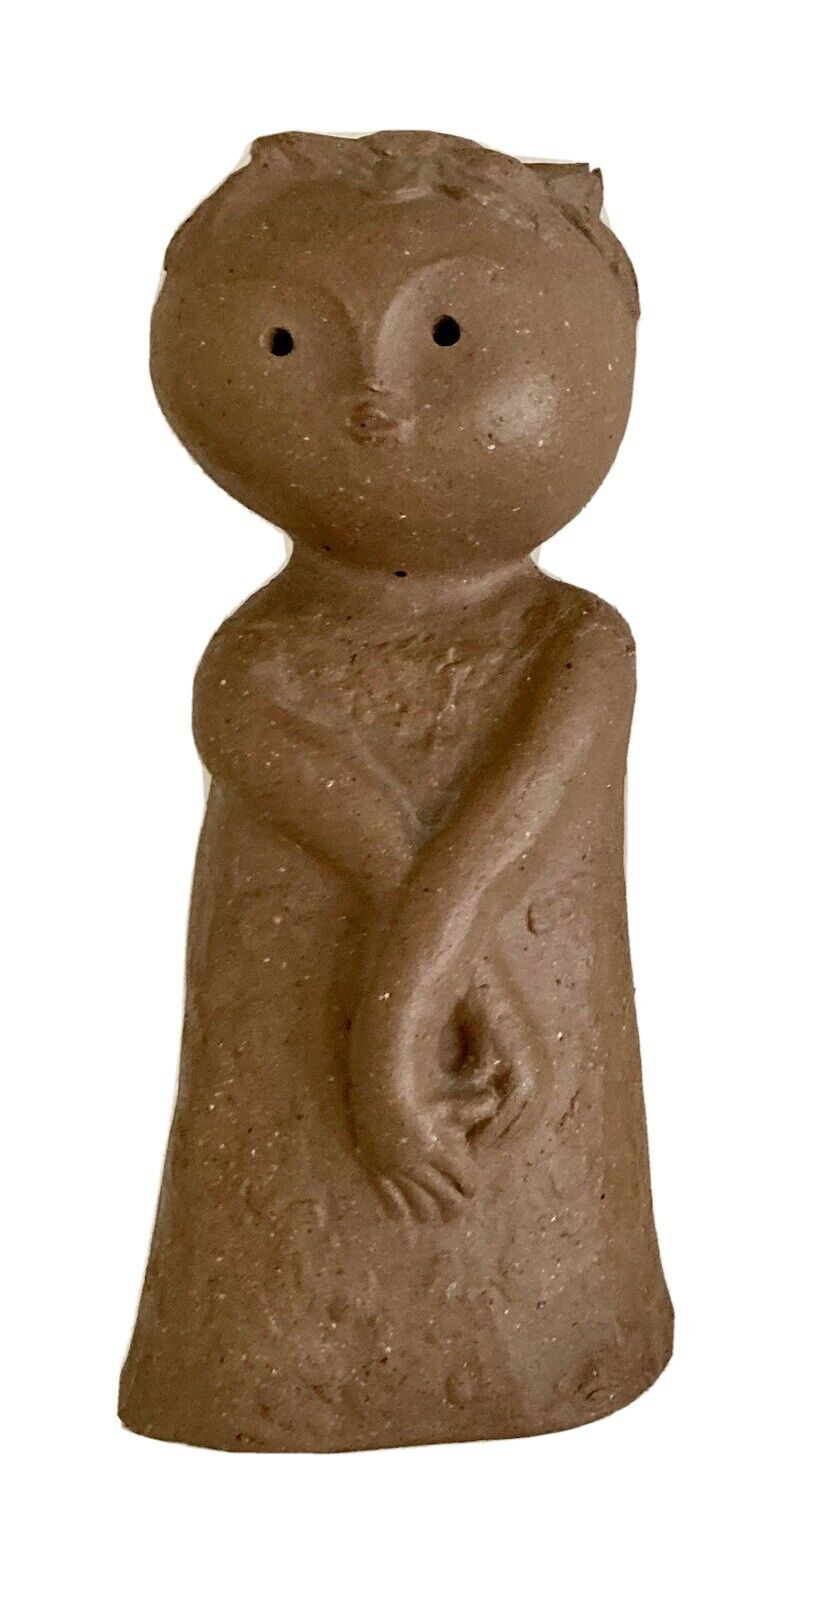 Japanese Pottery Kneeling Girl Earthenware Figurine